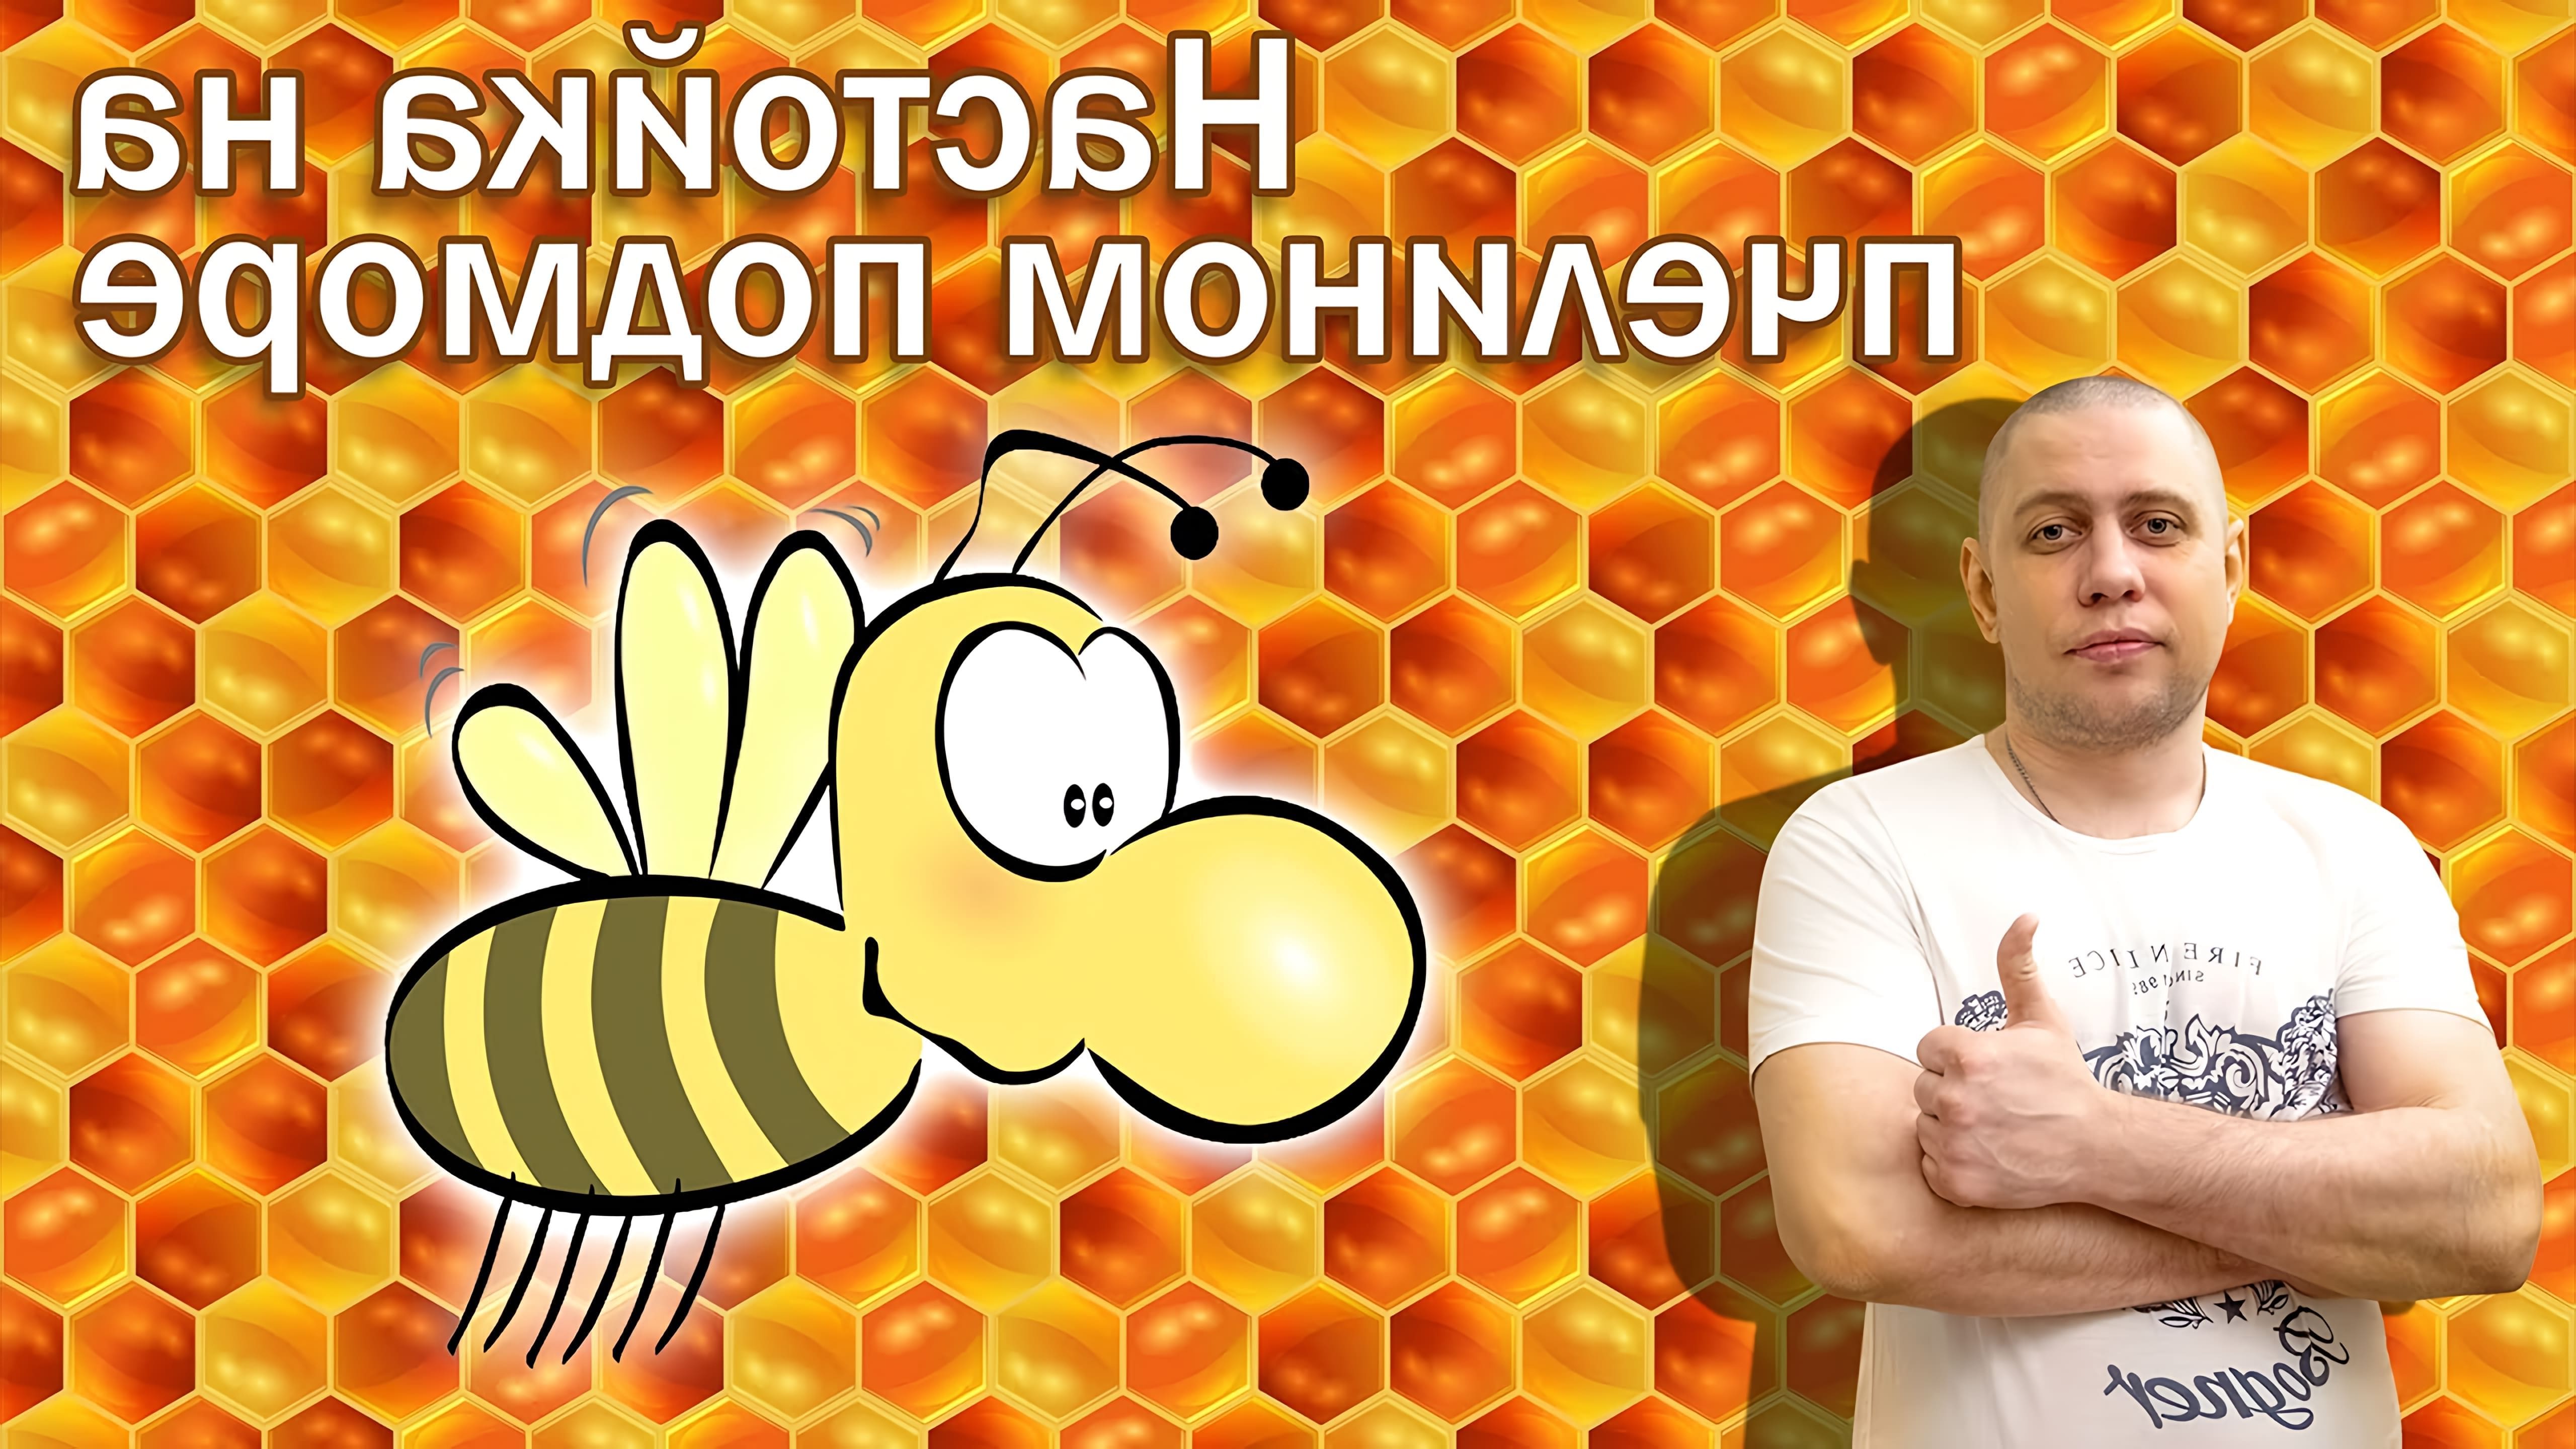 В этом видео рассказывается о приготовлении настойки на пчелином подморе, которая является народным лекарственным средством